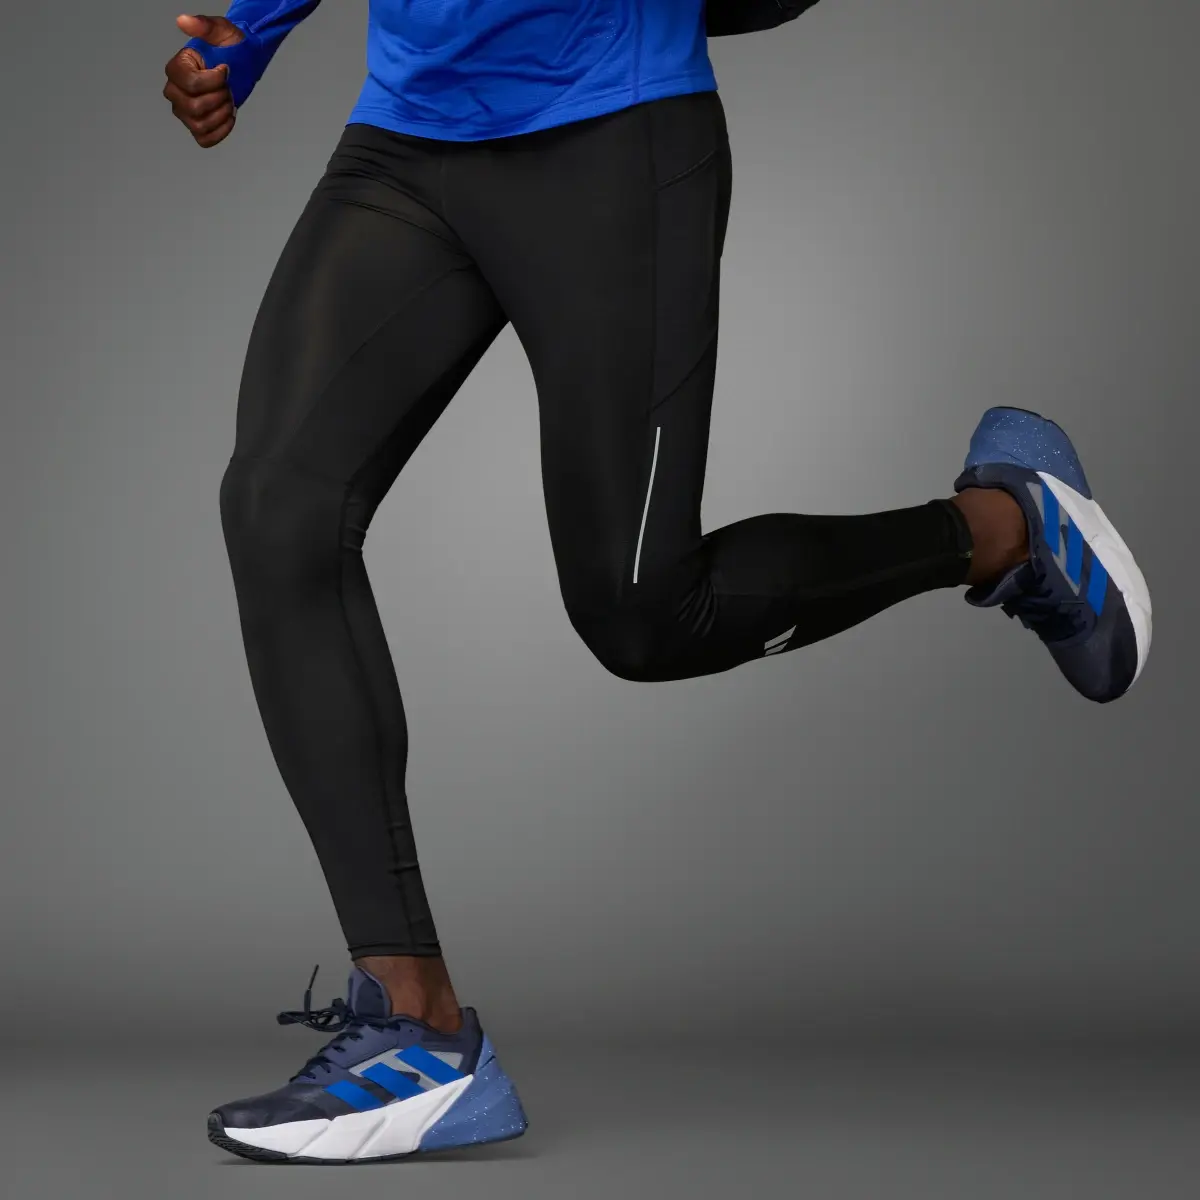 Adidas Own the Run Leggings. 1